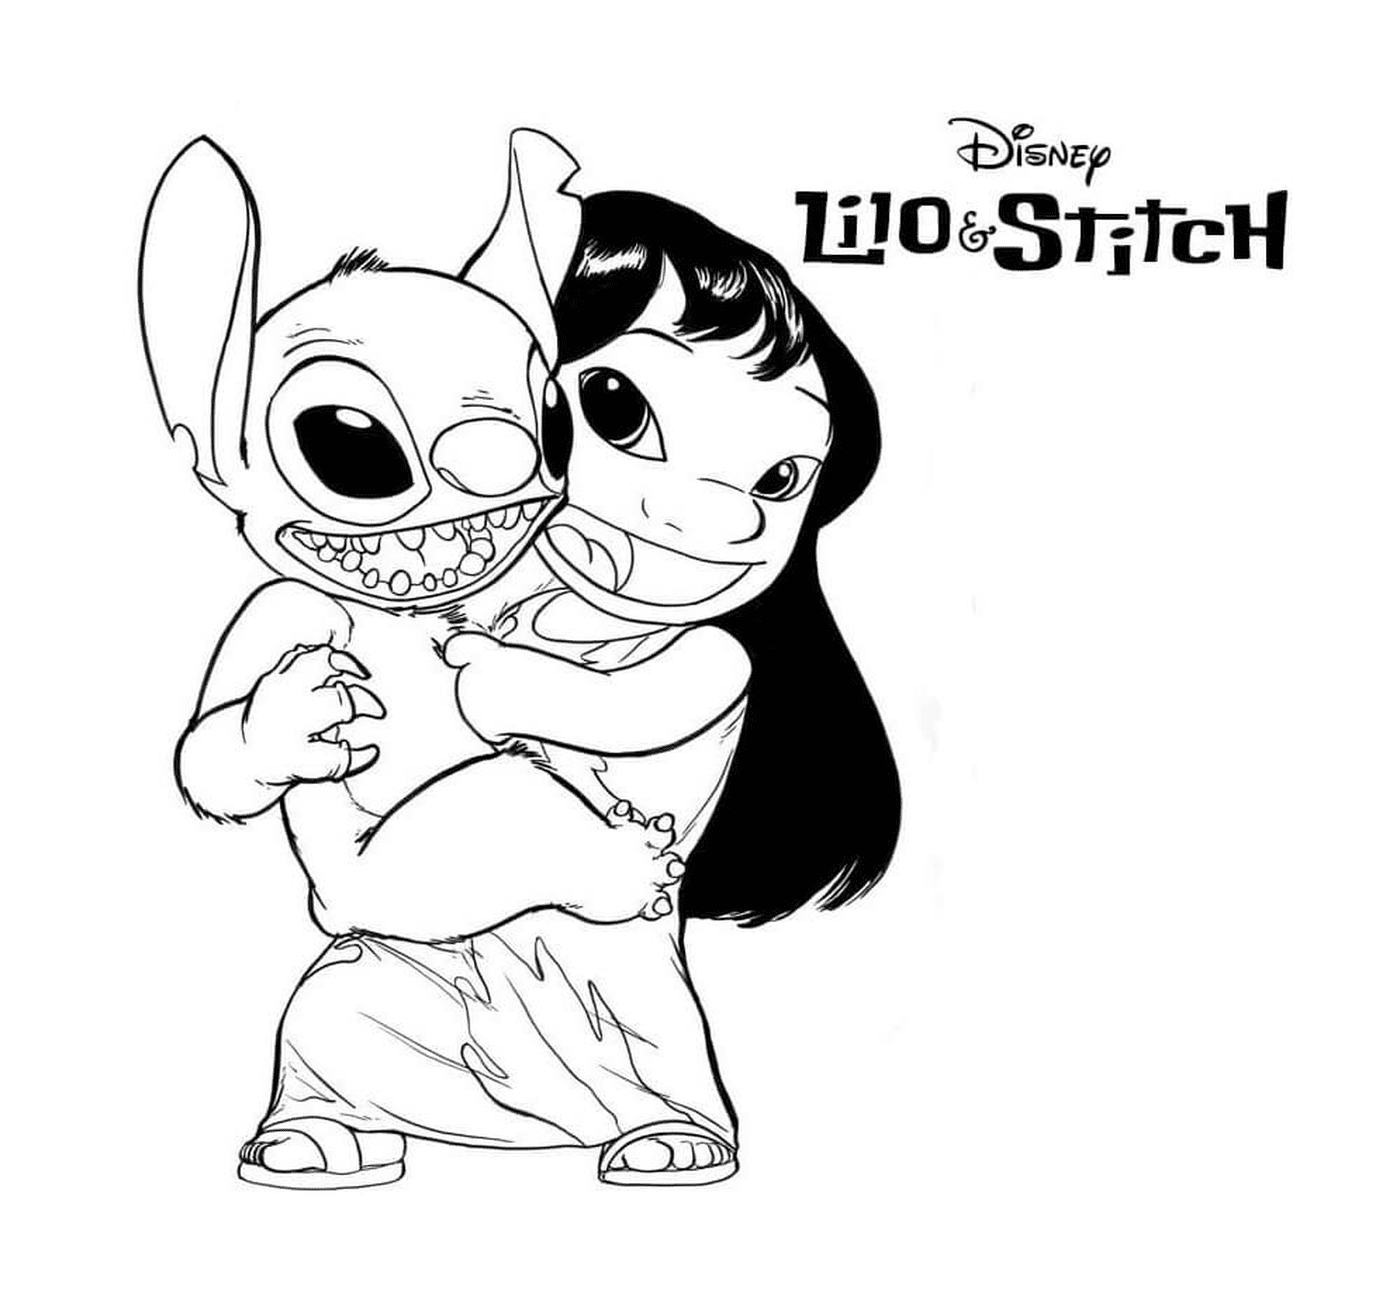  Lilo and Stitch have fun 